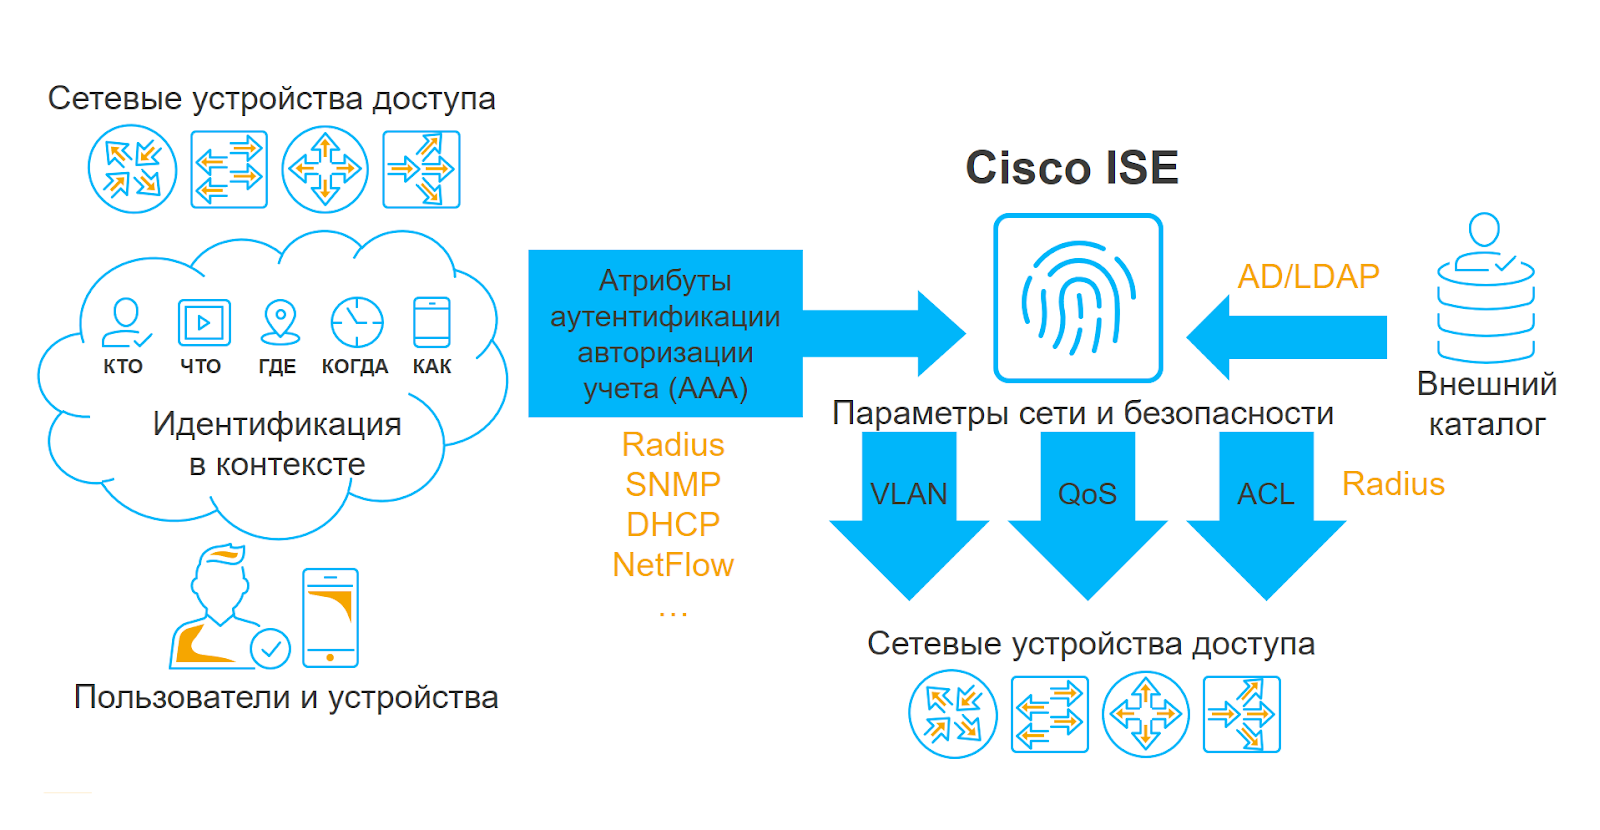 Тестирование покажет: как подготовиться к внедрению Cisco ISE и понять, какие фичи системы вам нужны - 2